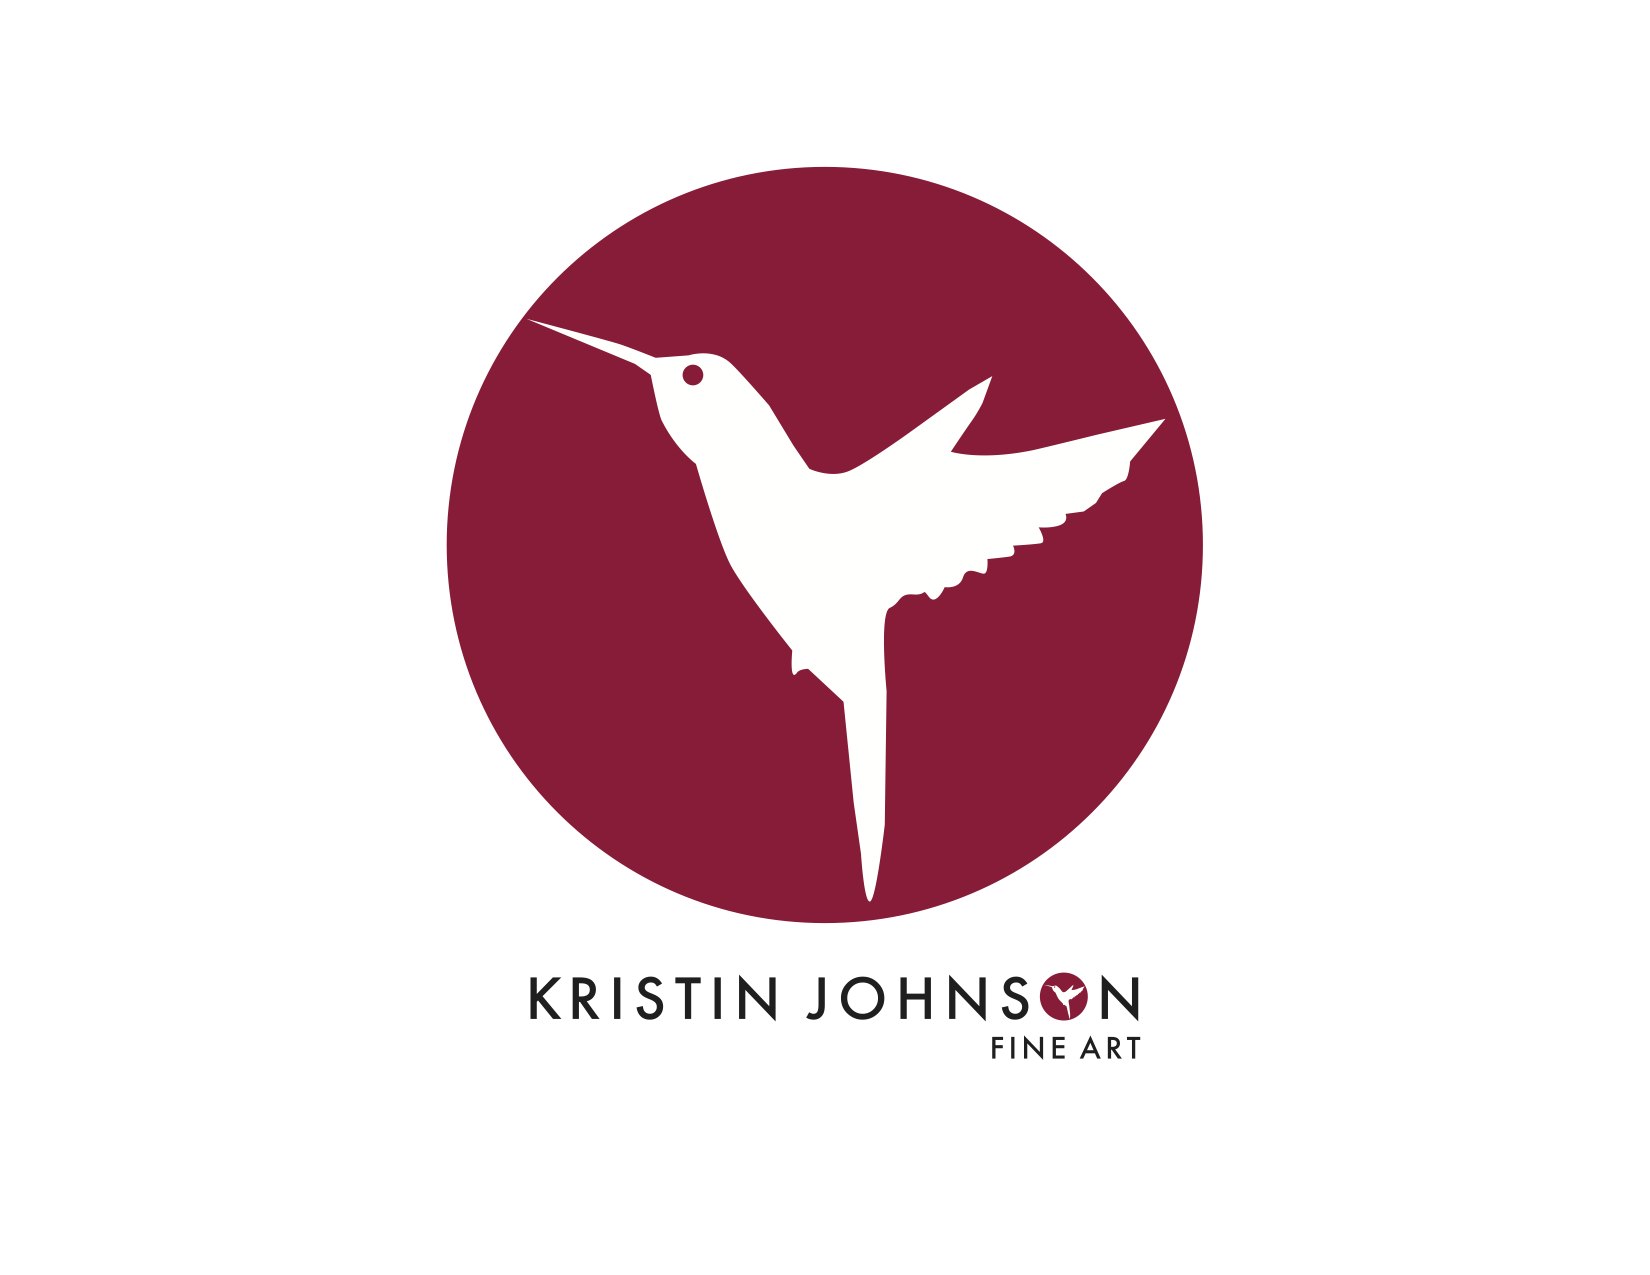 Kristin Johnson Fine Art